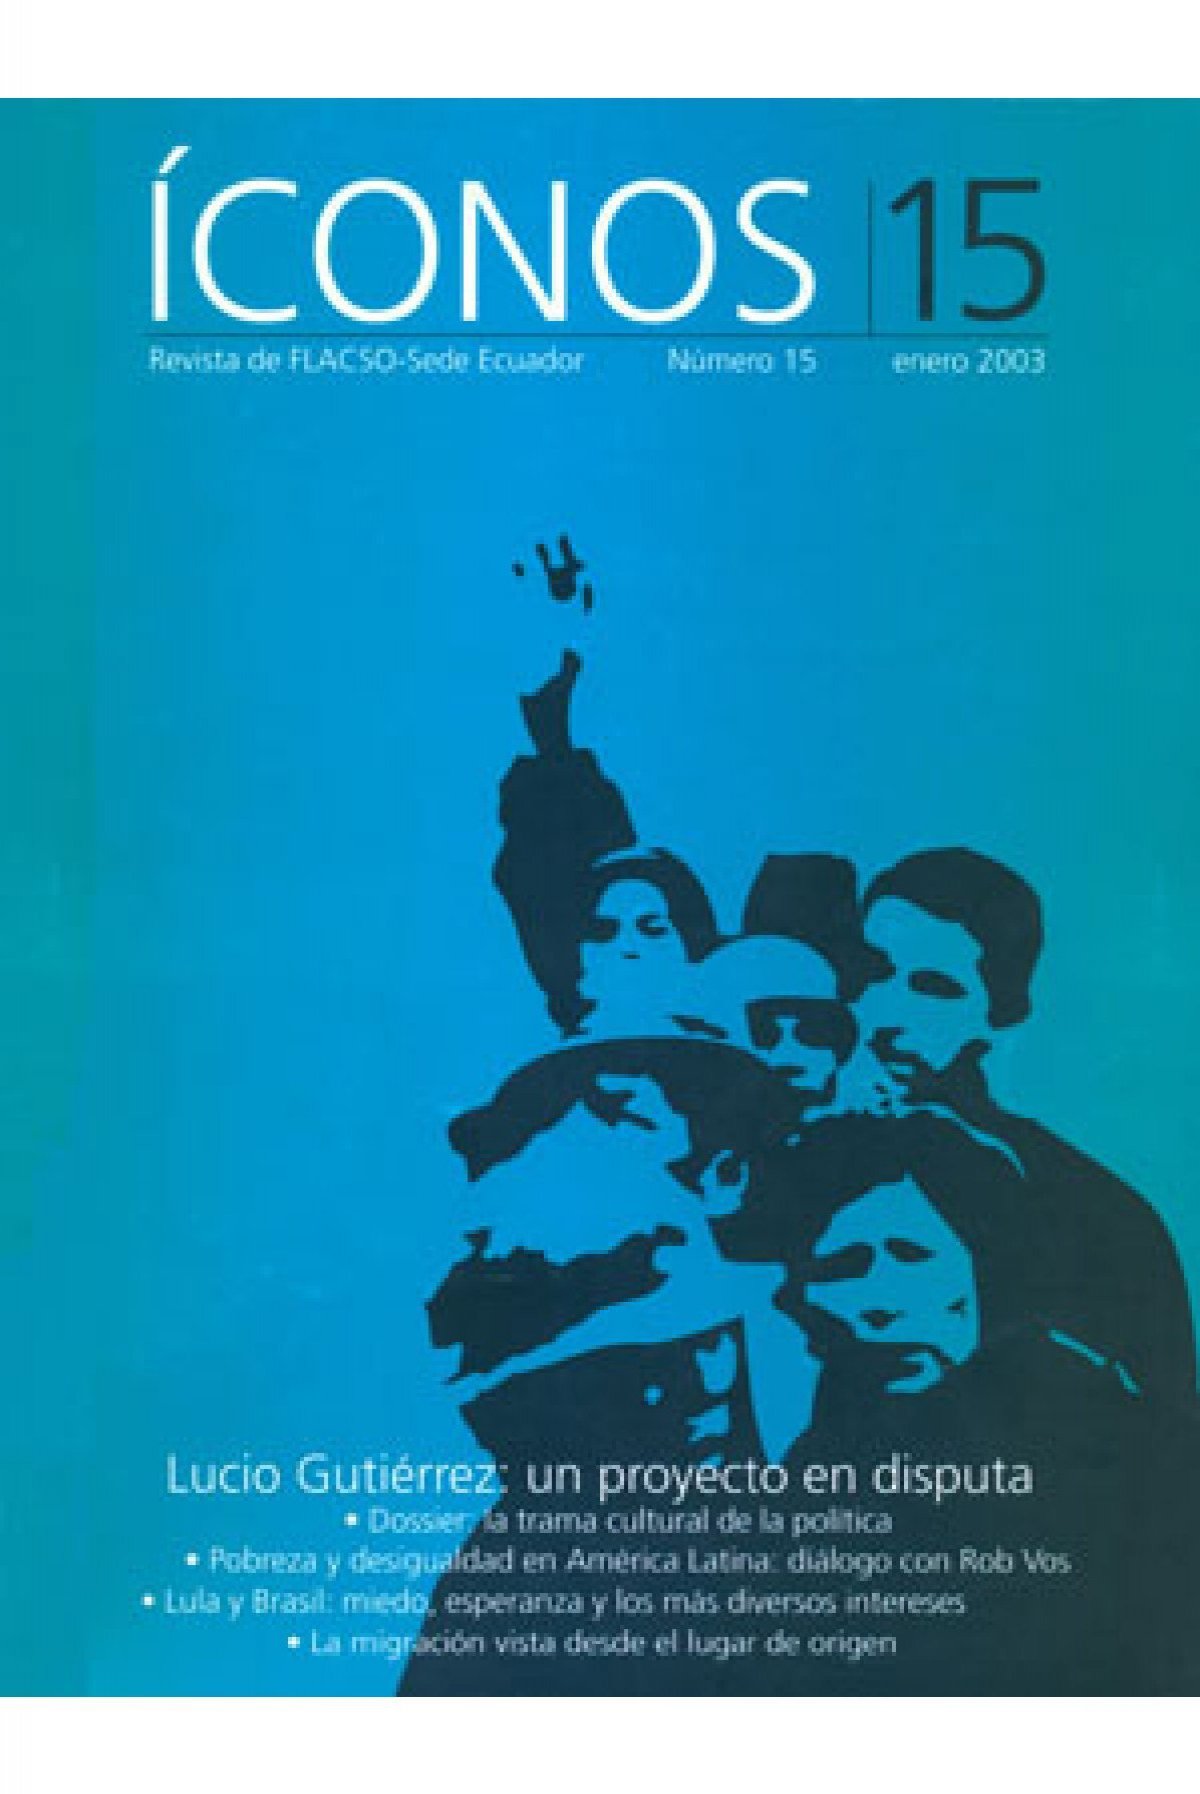 Escalada y una obsesión: el “clásico” con Los Andes - Política del Sur